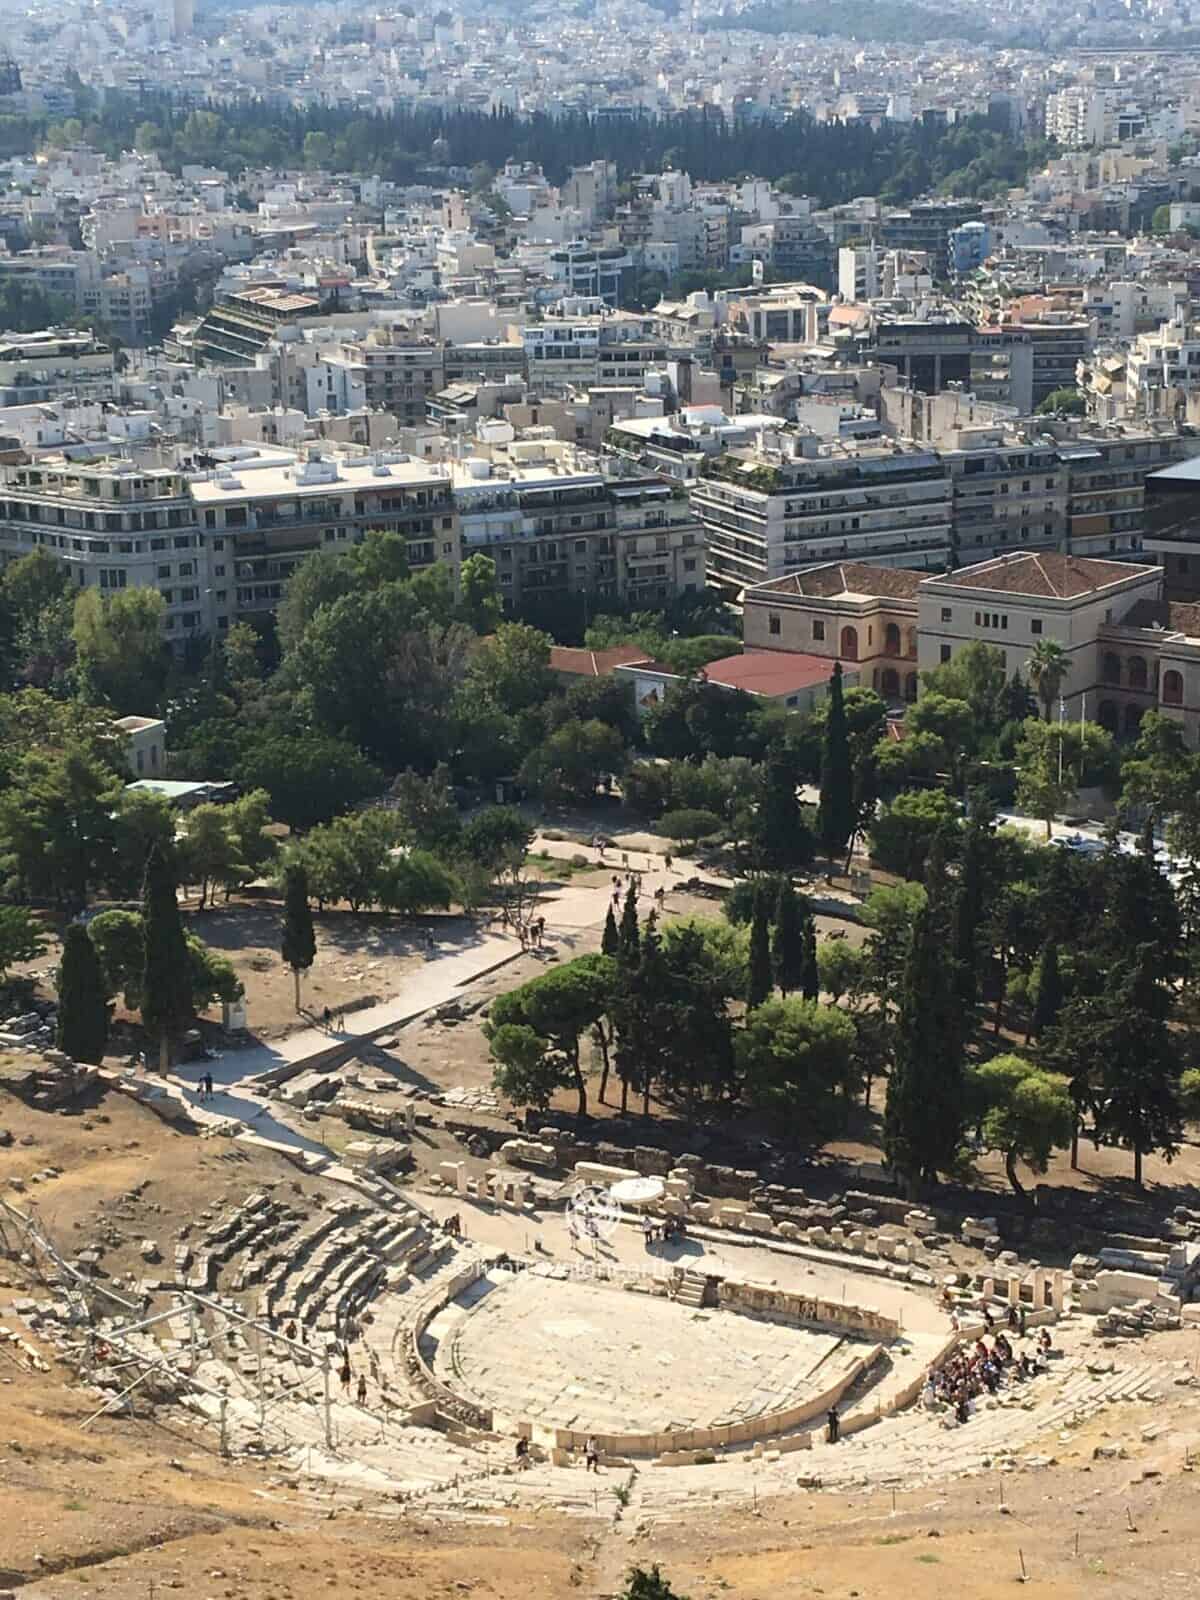 Acropolis of Athens , Athens